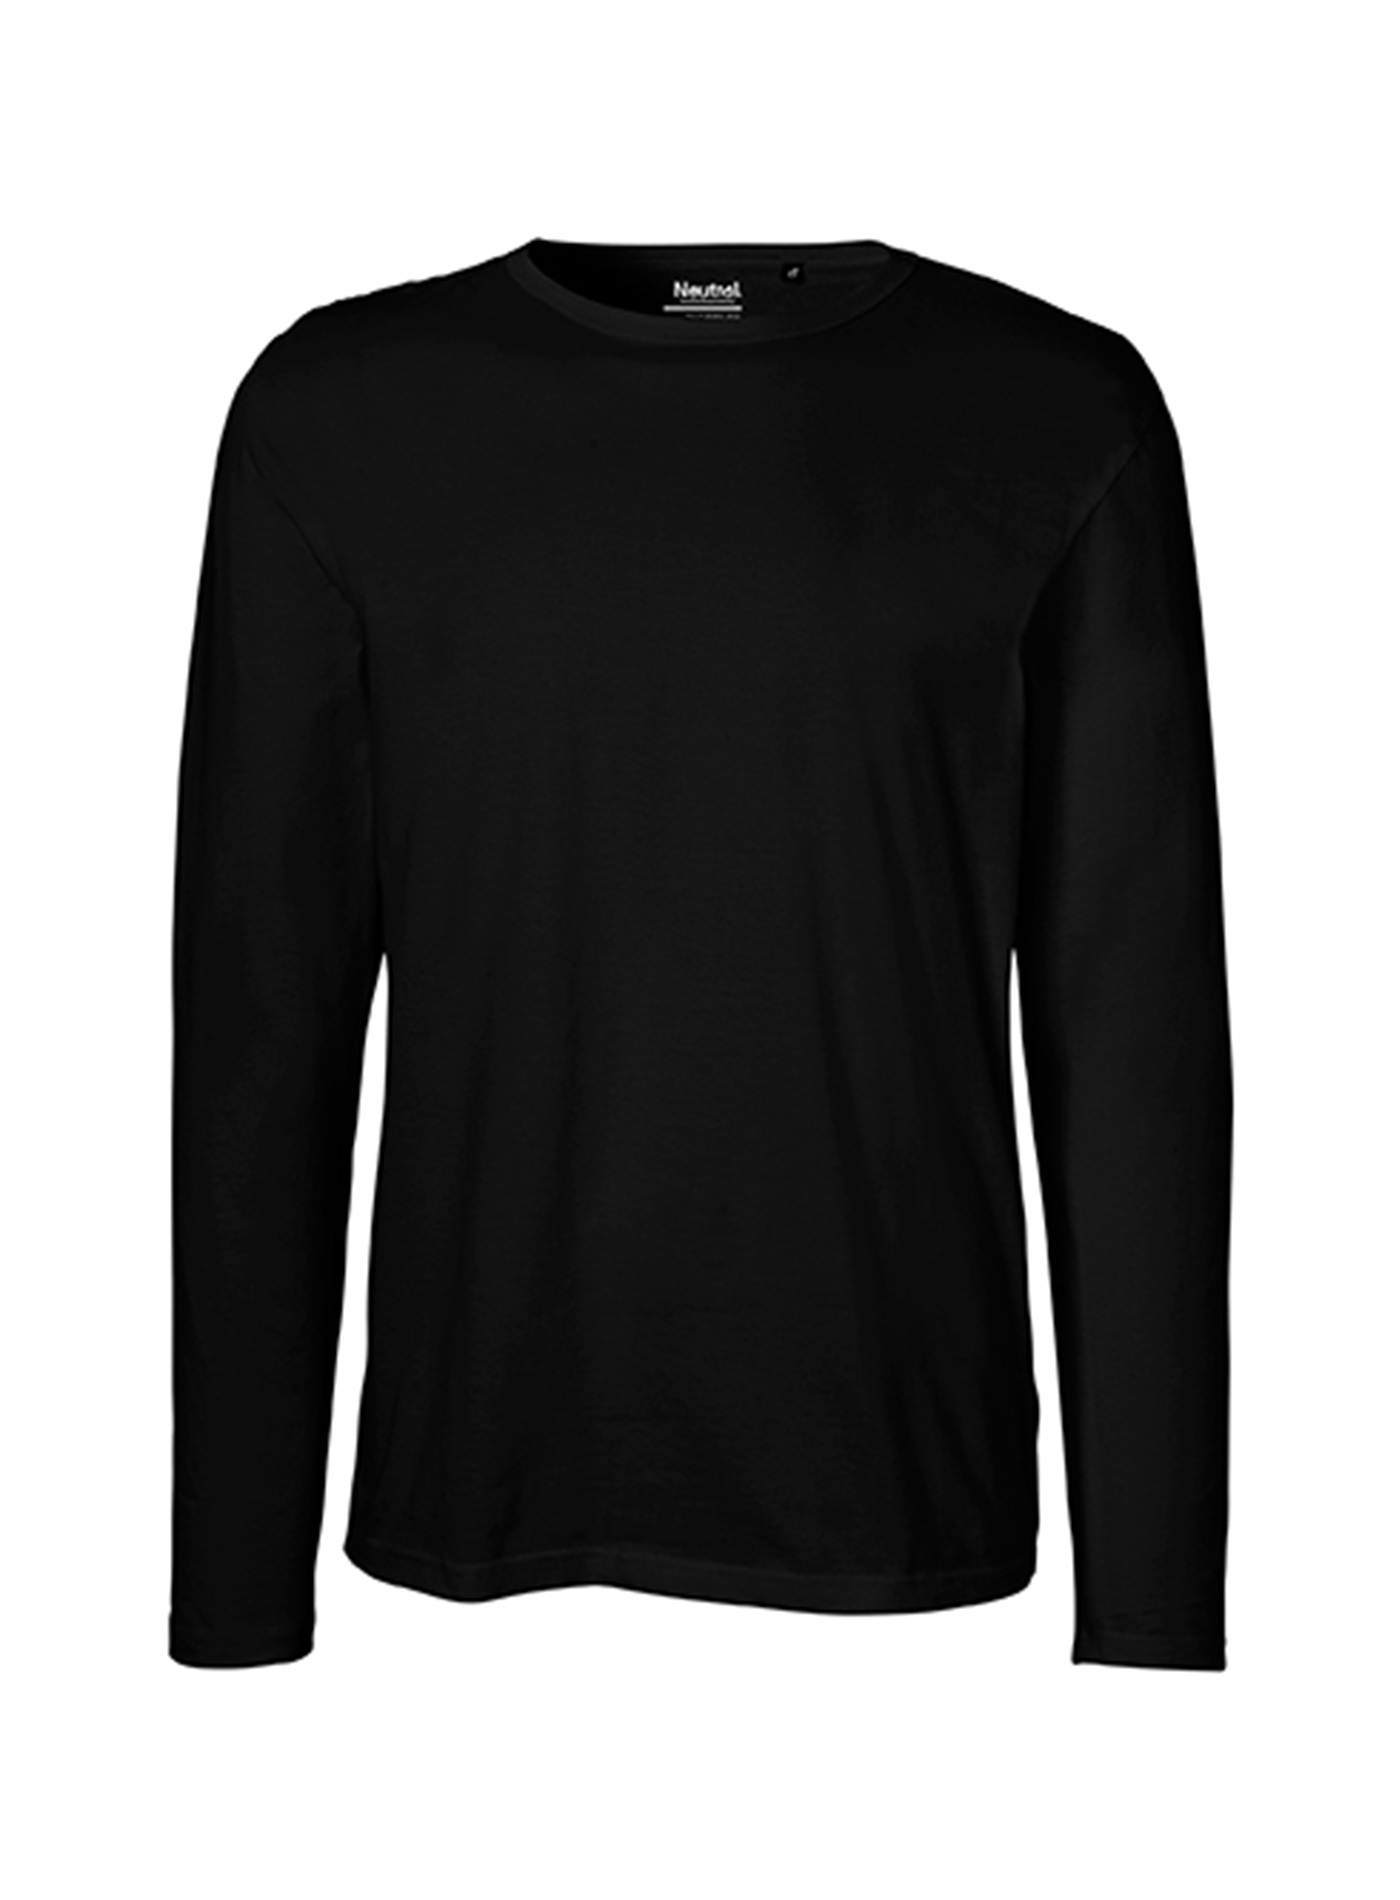 Pánské tričko s dlouhým rukávem Neutral - černá XL